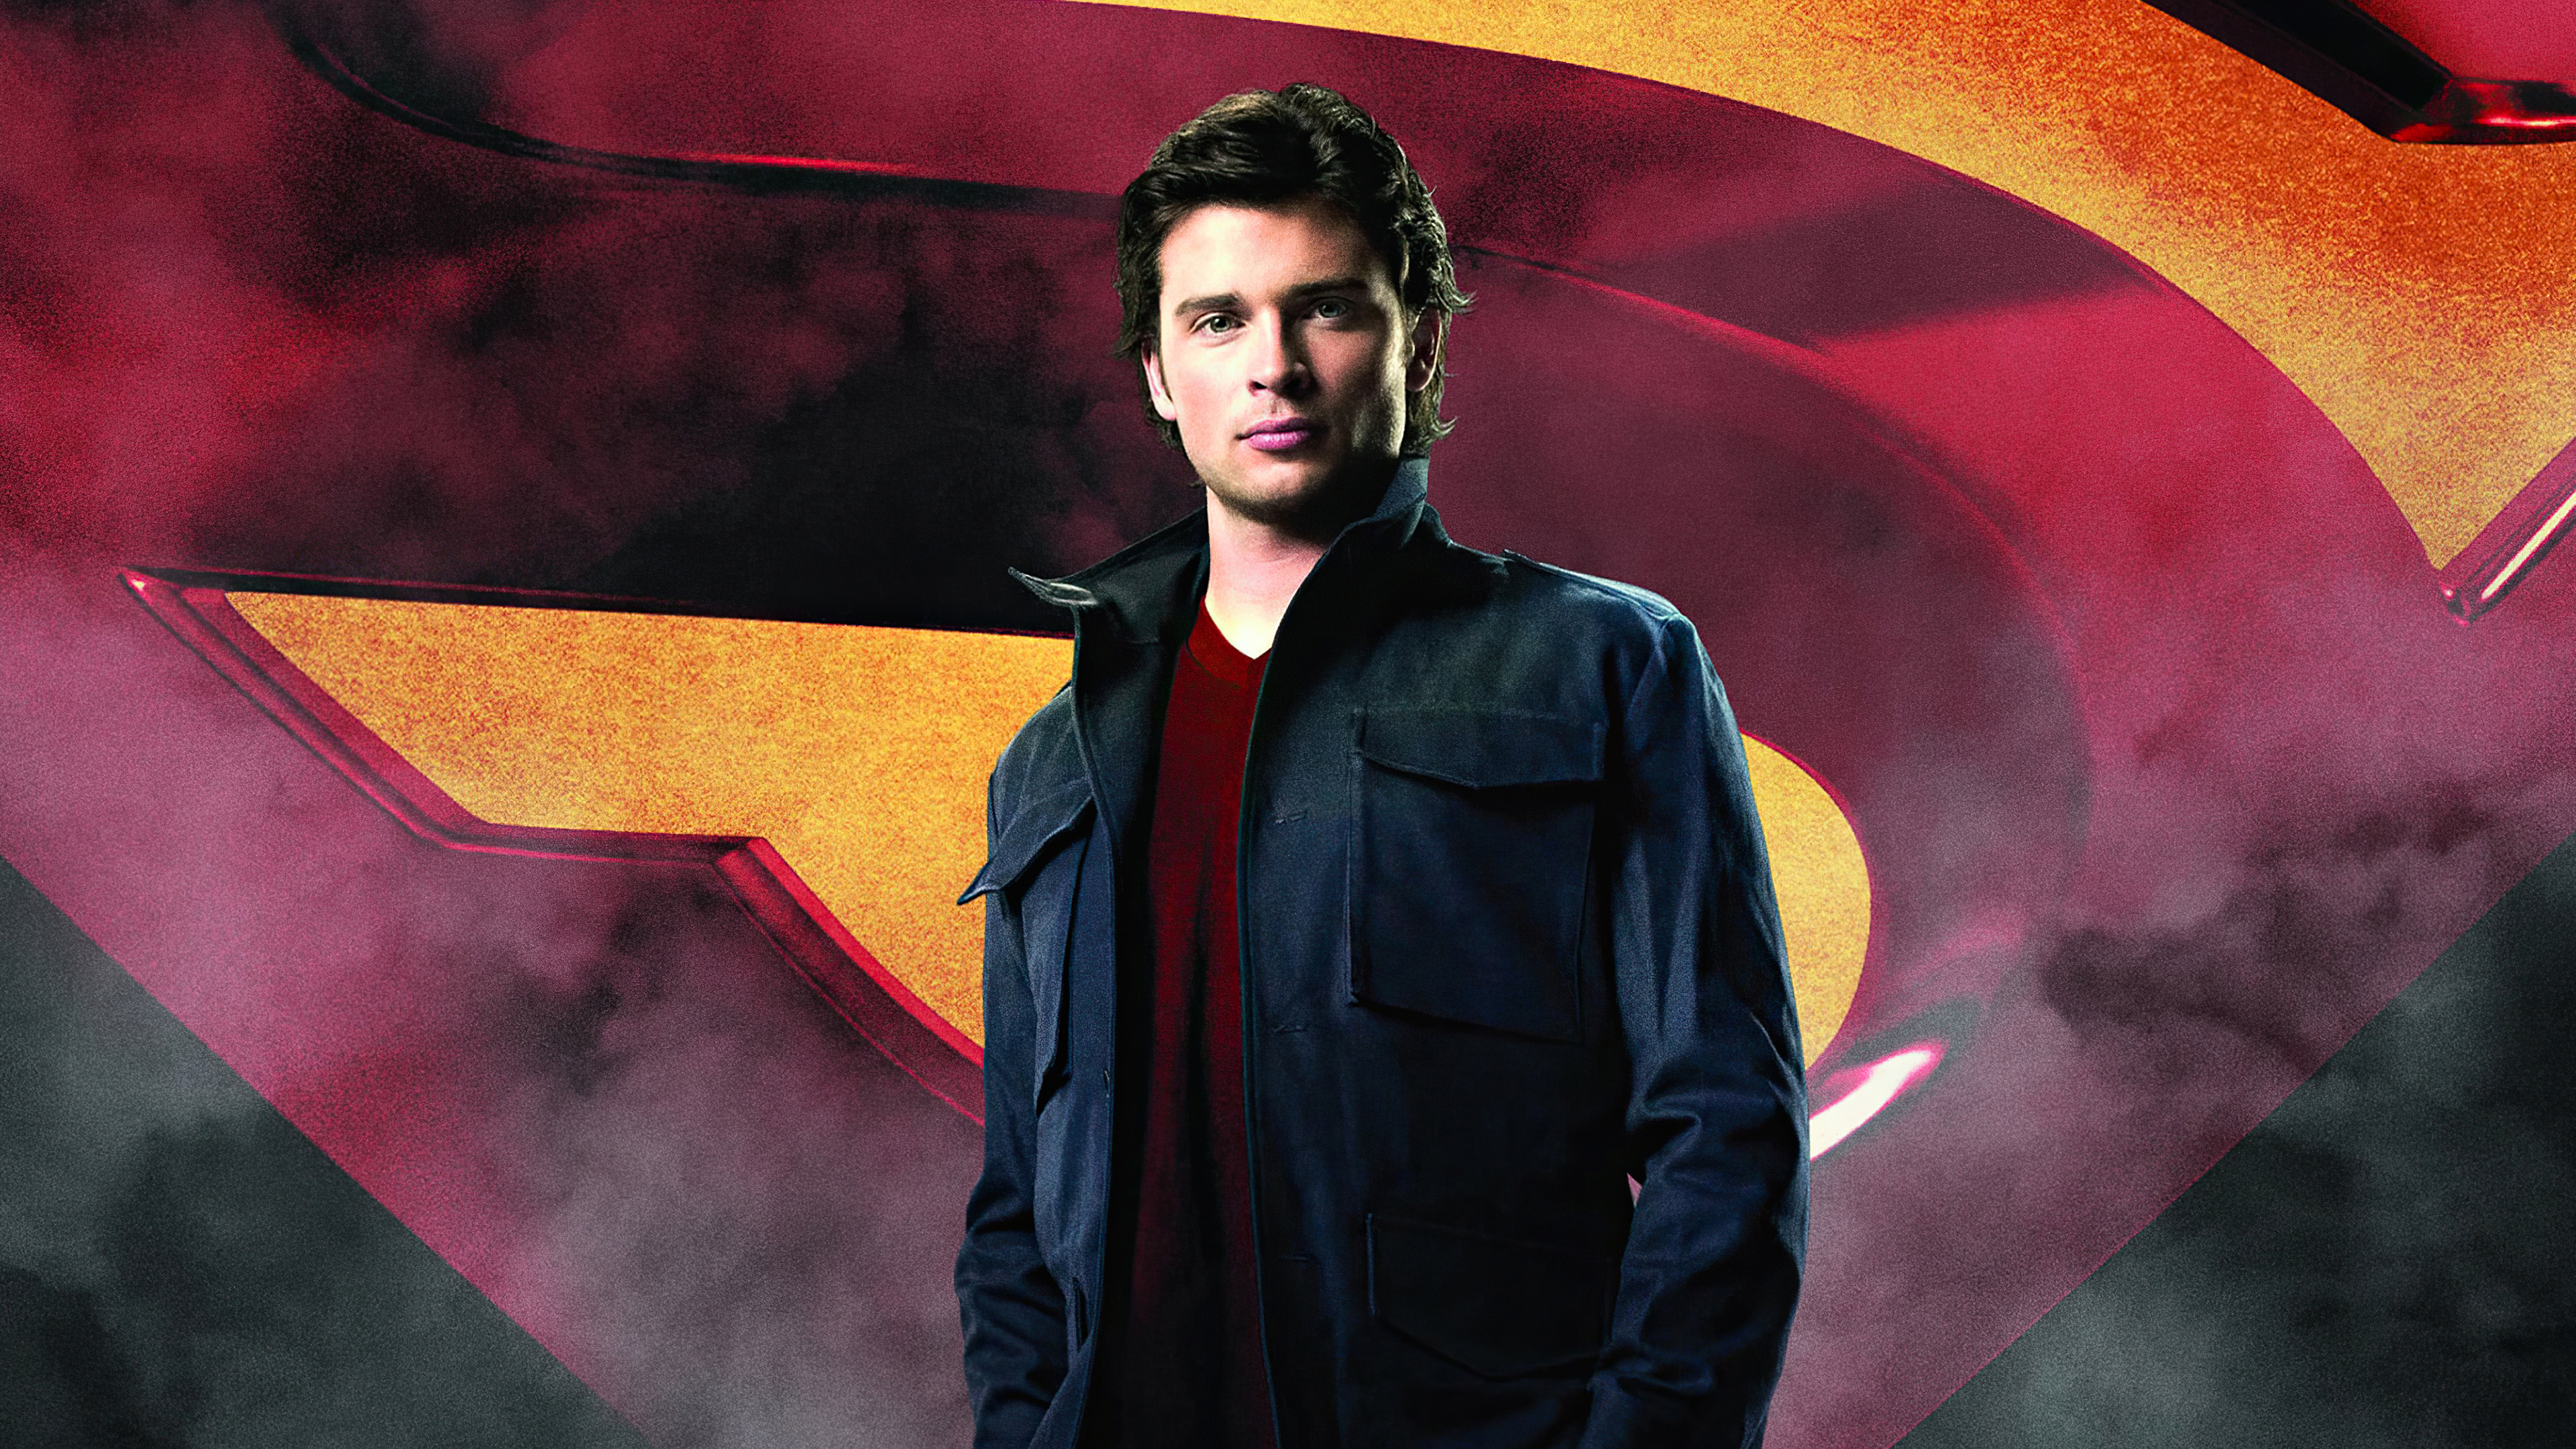 Smallville (TV Series)